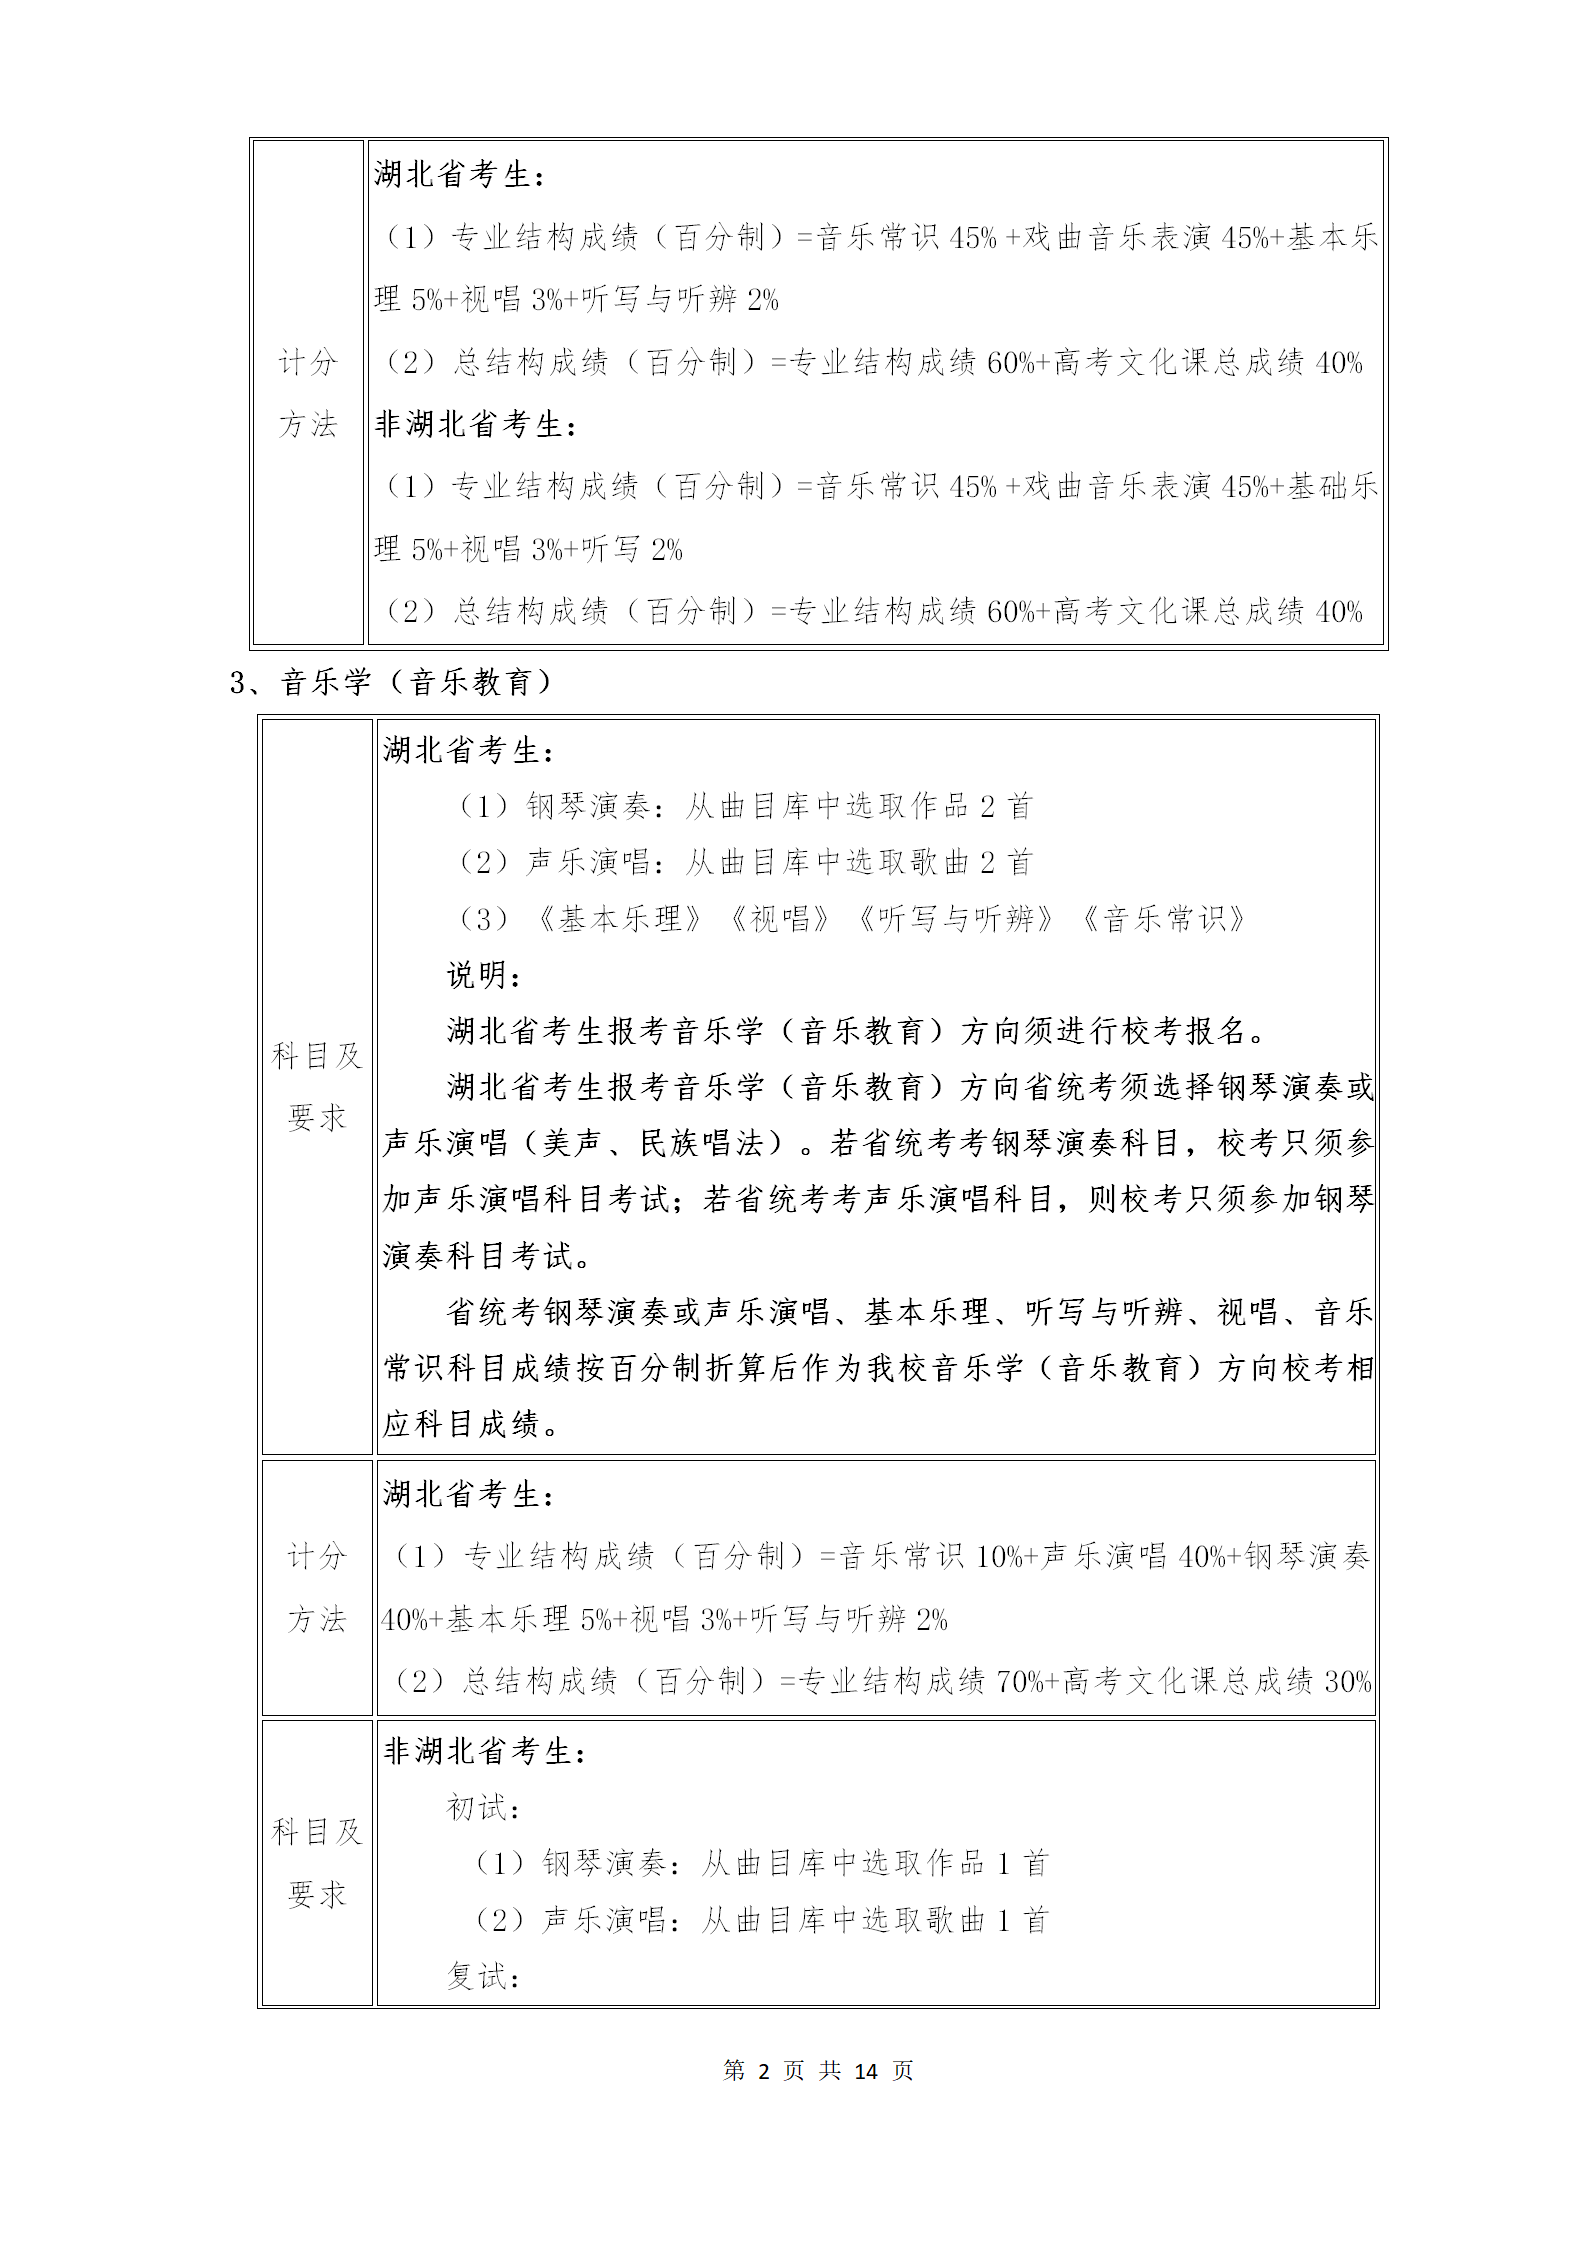 附件1：武汉音乐学院2021年普通本科招生专业考试内容和计分方法（调整版）_02.png